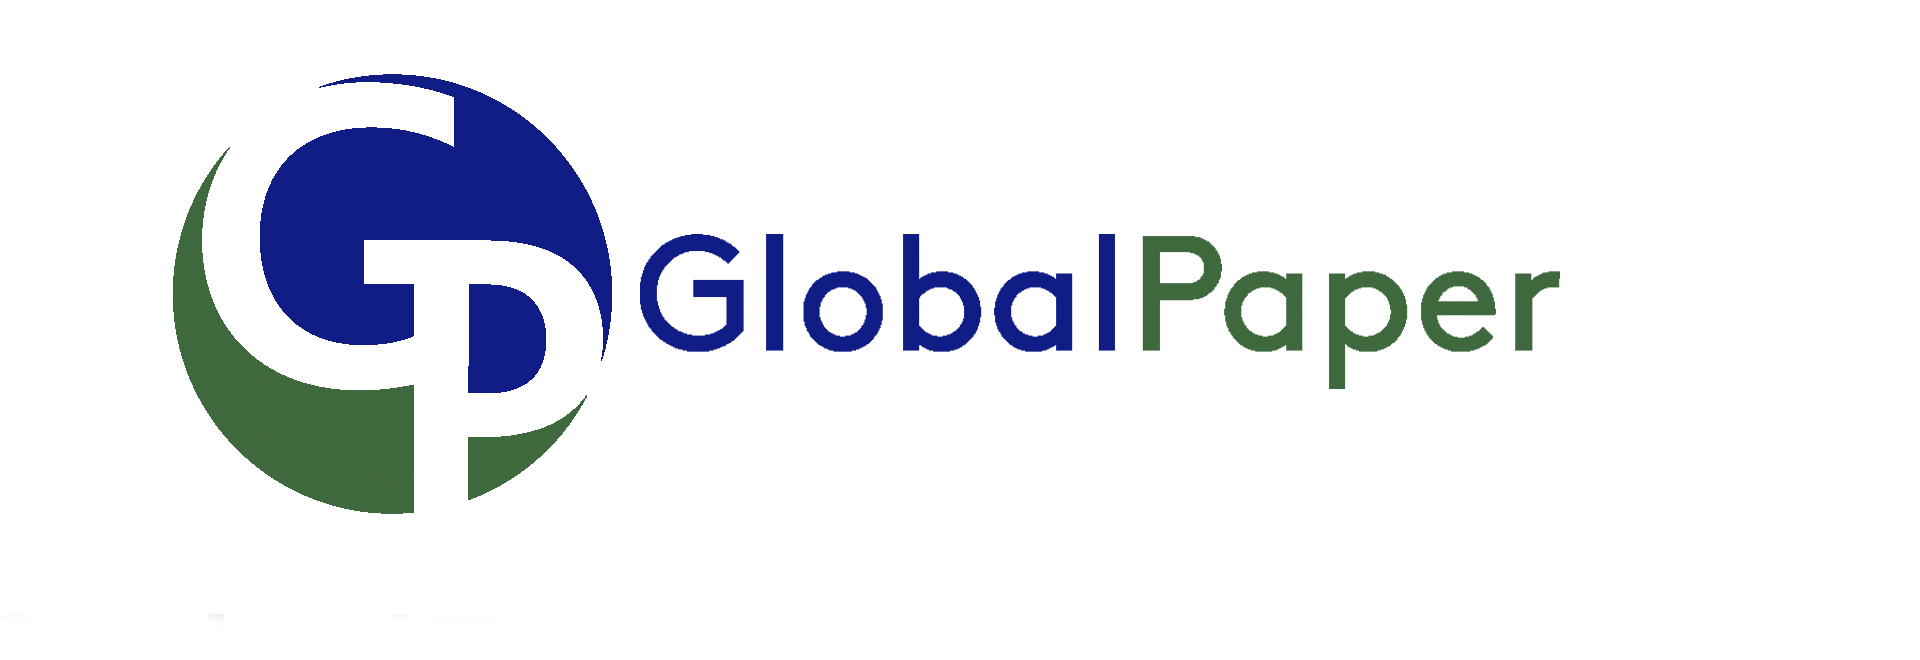 Global Paper